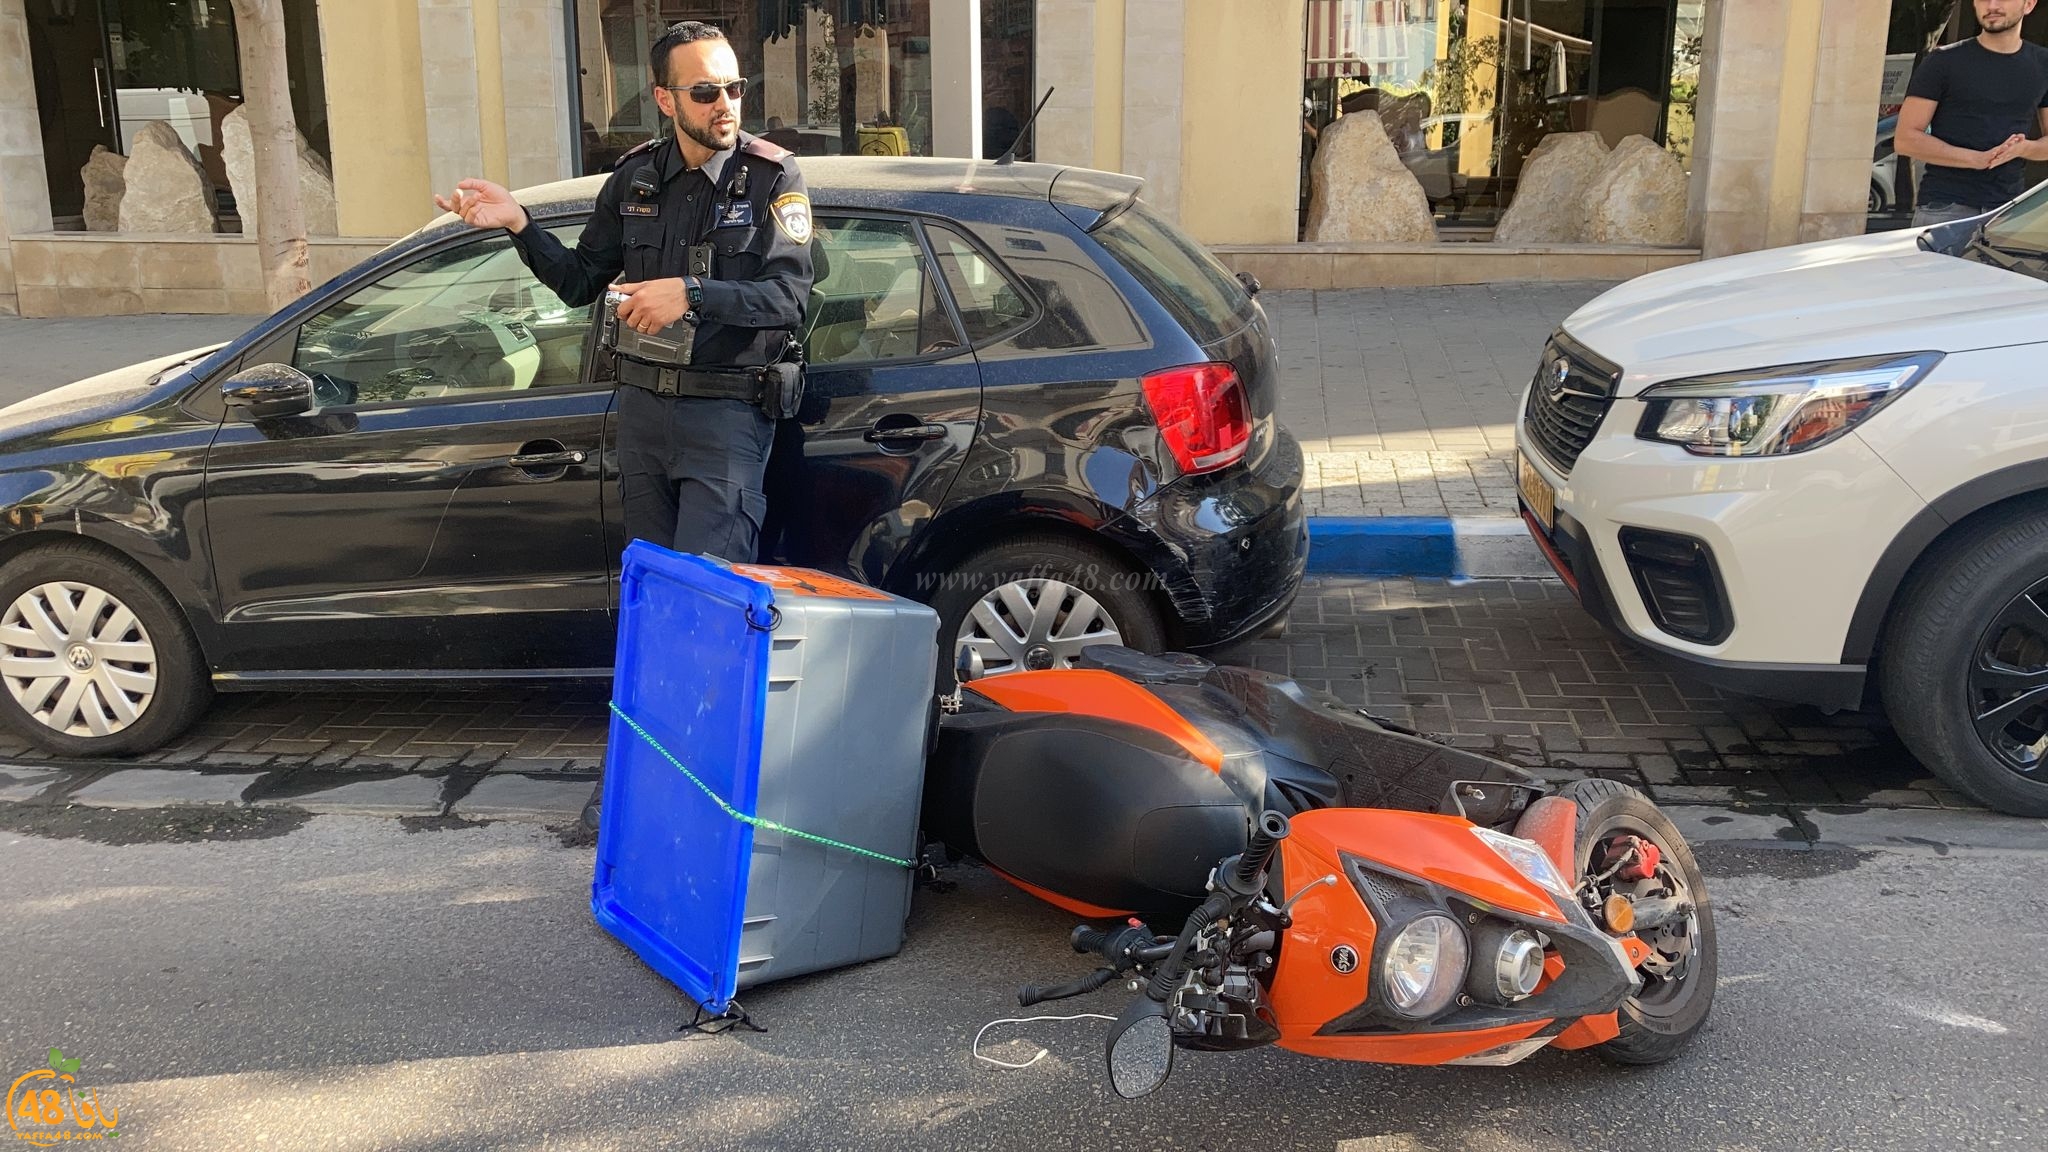  يافا: اصابة طفيفة لراكب دراجة نارية بحادث طرق 